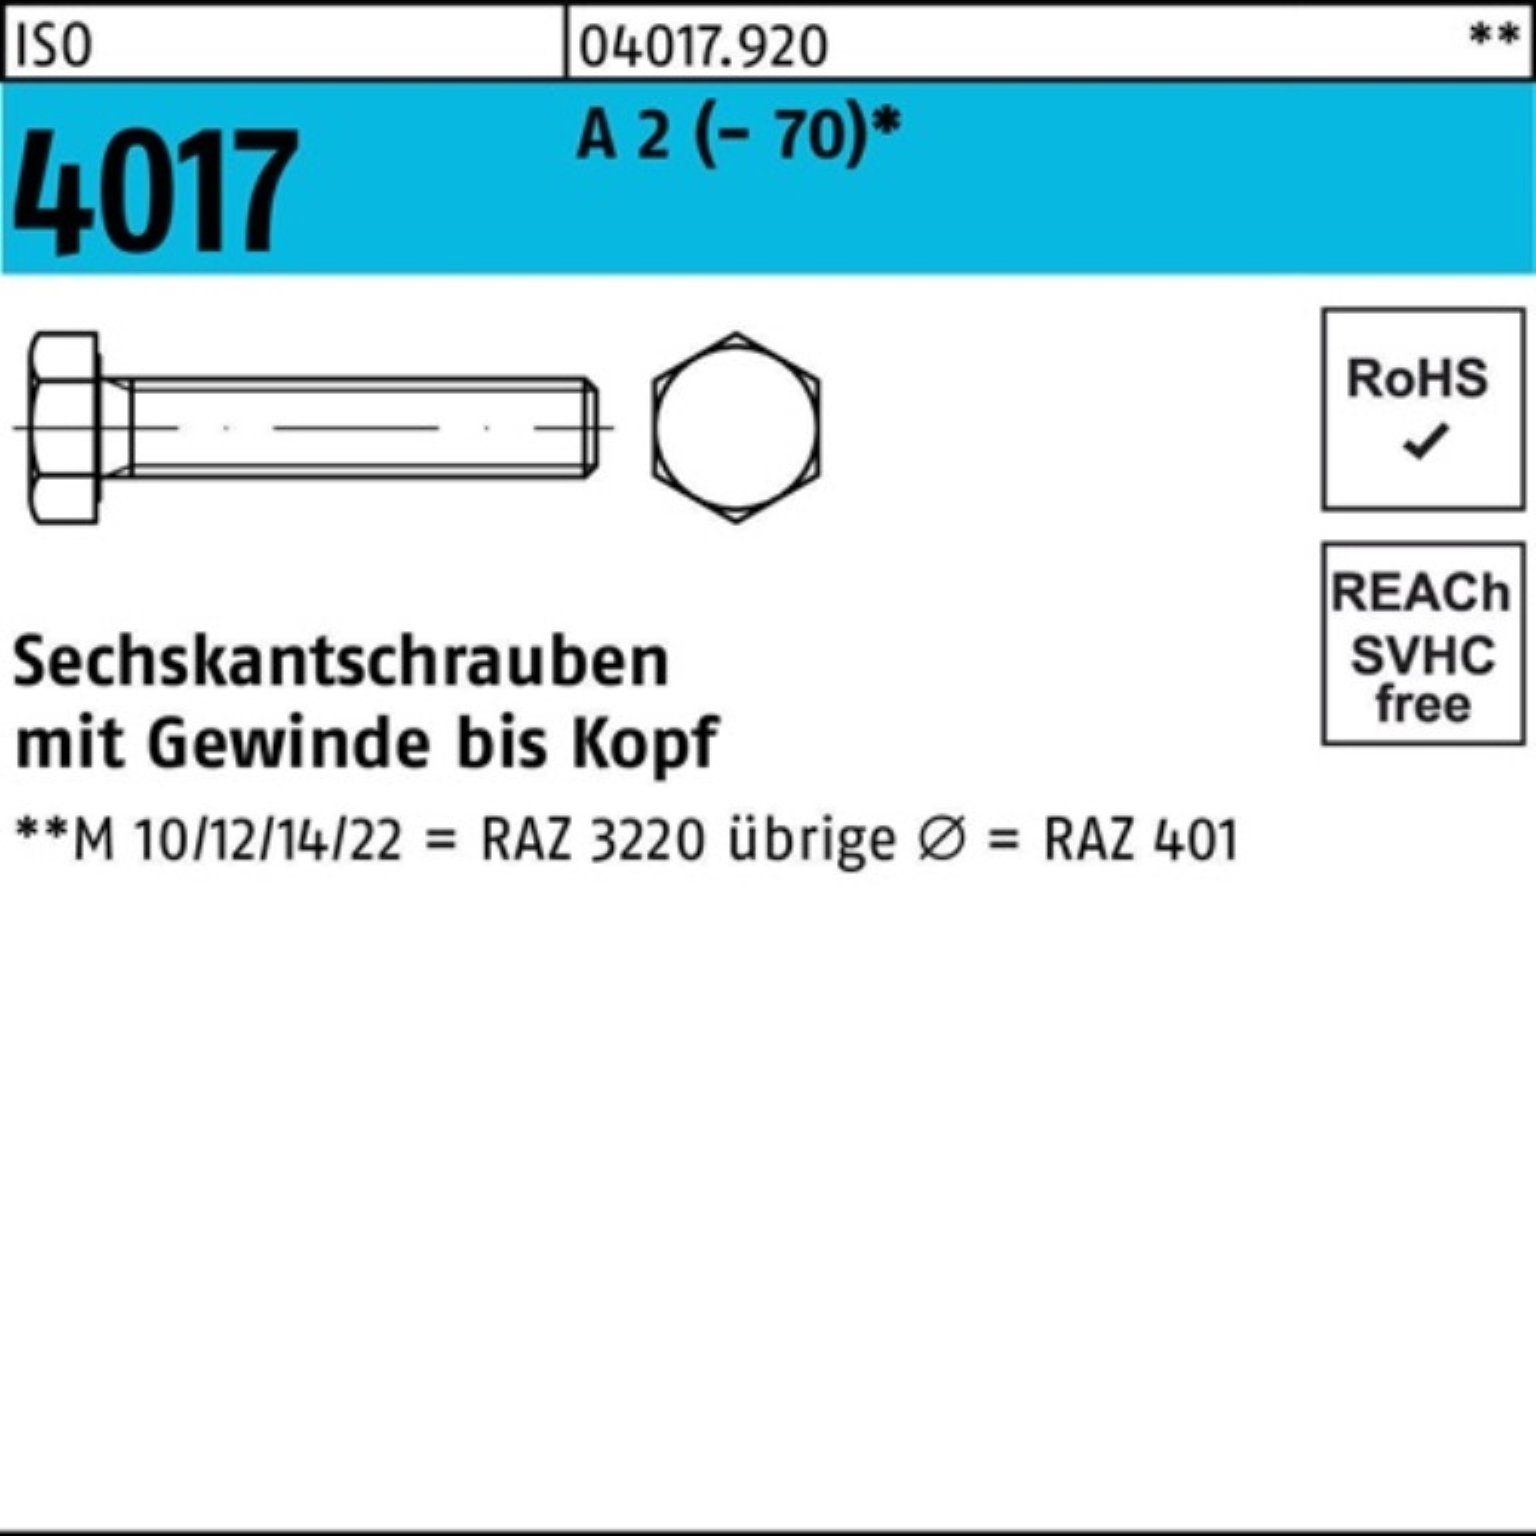 Bufab Sechskantschraube 100er Pack Sechskantschraube ISO 4017 VG M30x 100 A 2 (70) 1 Stück